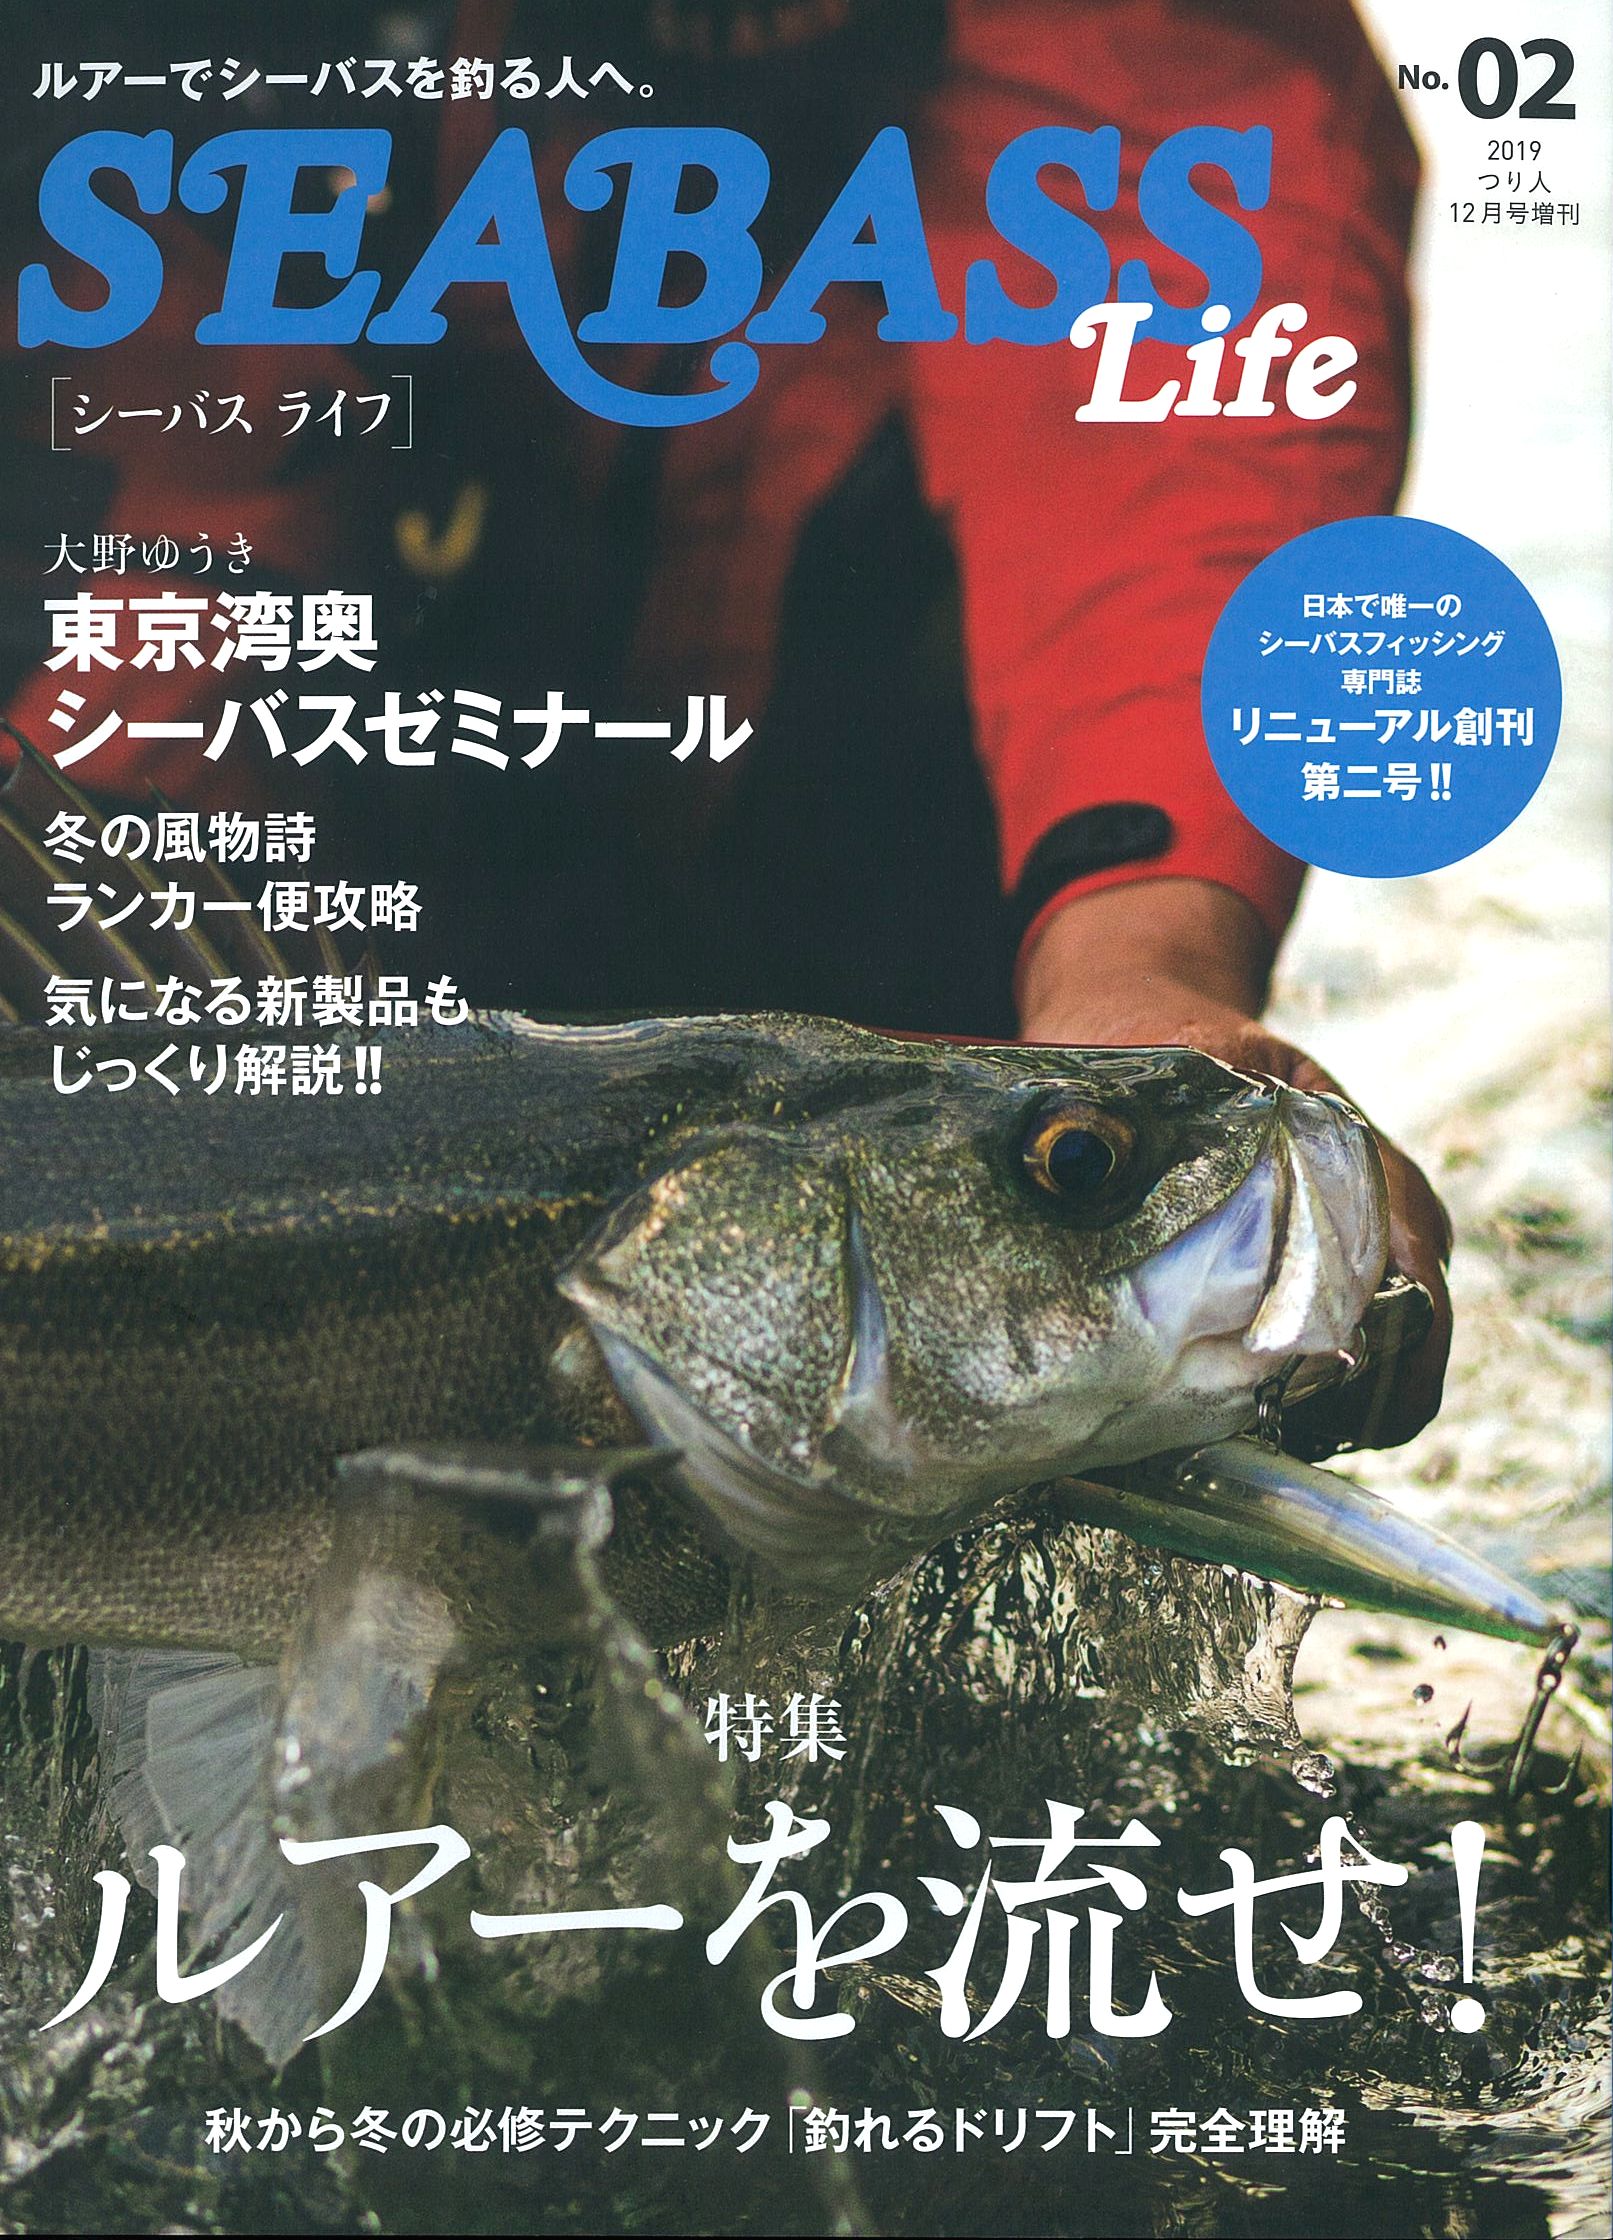 11月14日発売 Seabass Life No 02 月刊つり人ブログ